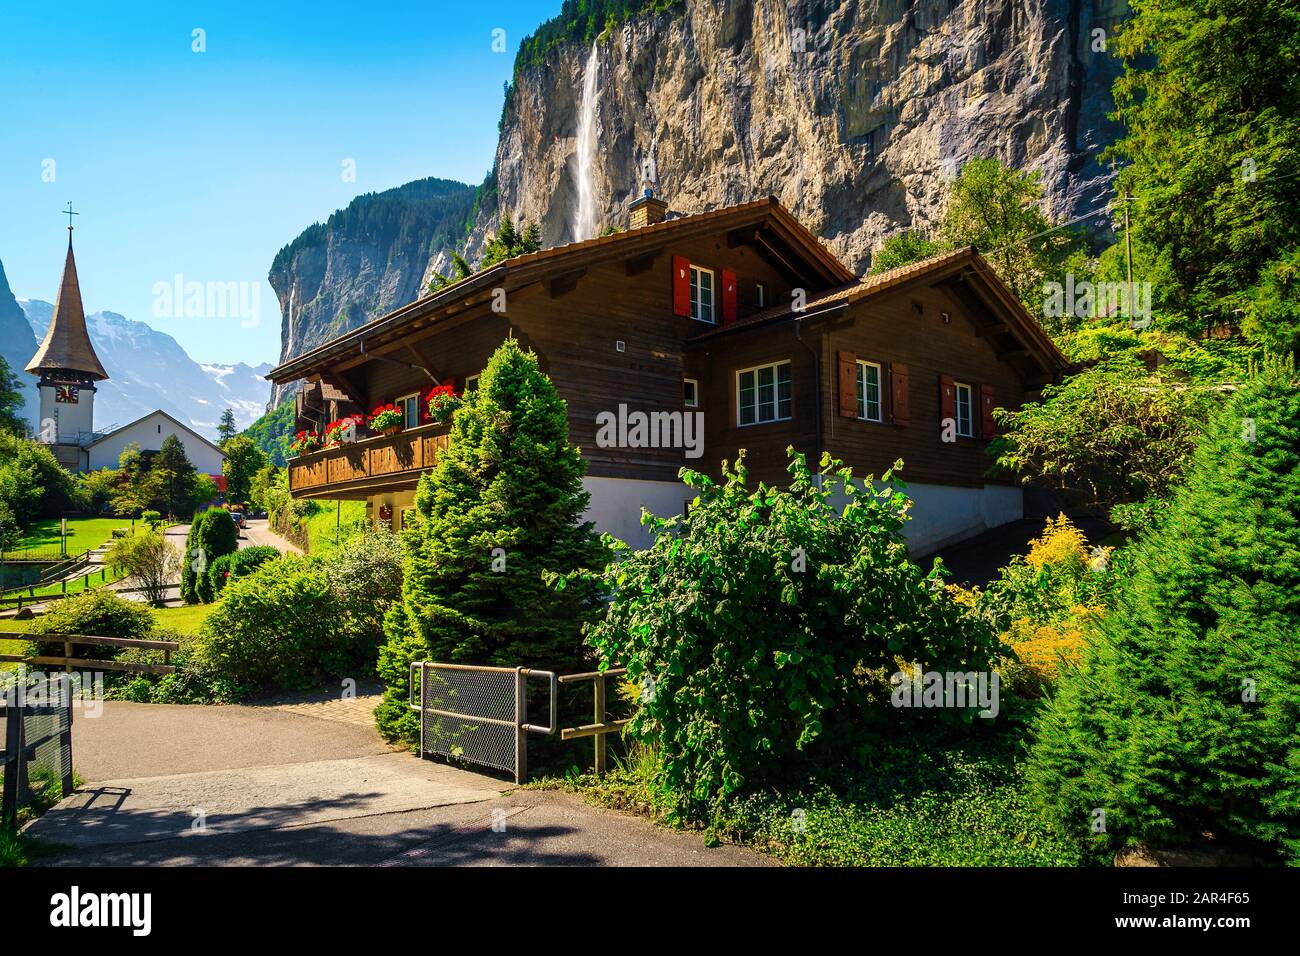 Superbe charmant village alpin avec de hautes chutes d'eau et une église idyllique. Merveilleux voyage et destination touristique, village de Lauterbrunnen avec Staub Banque D'Images